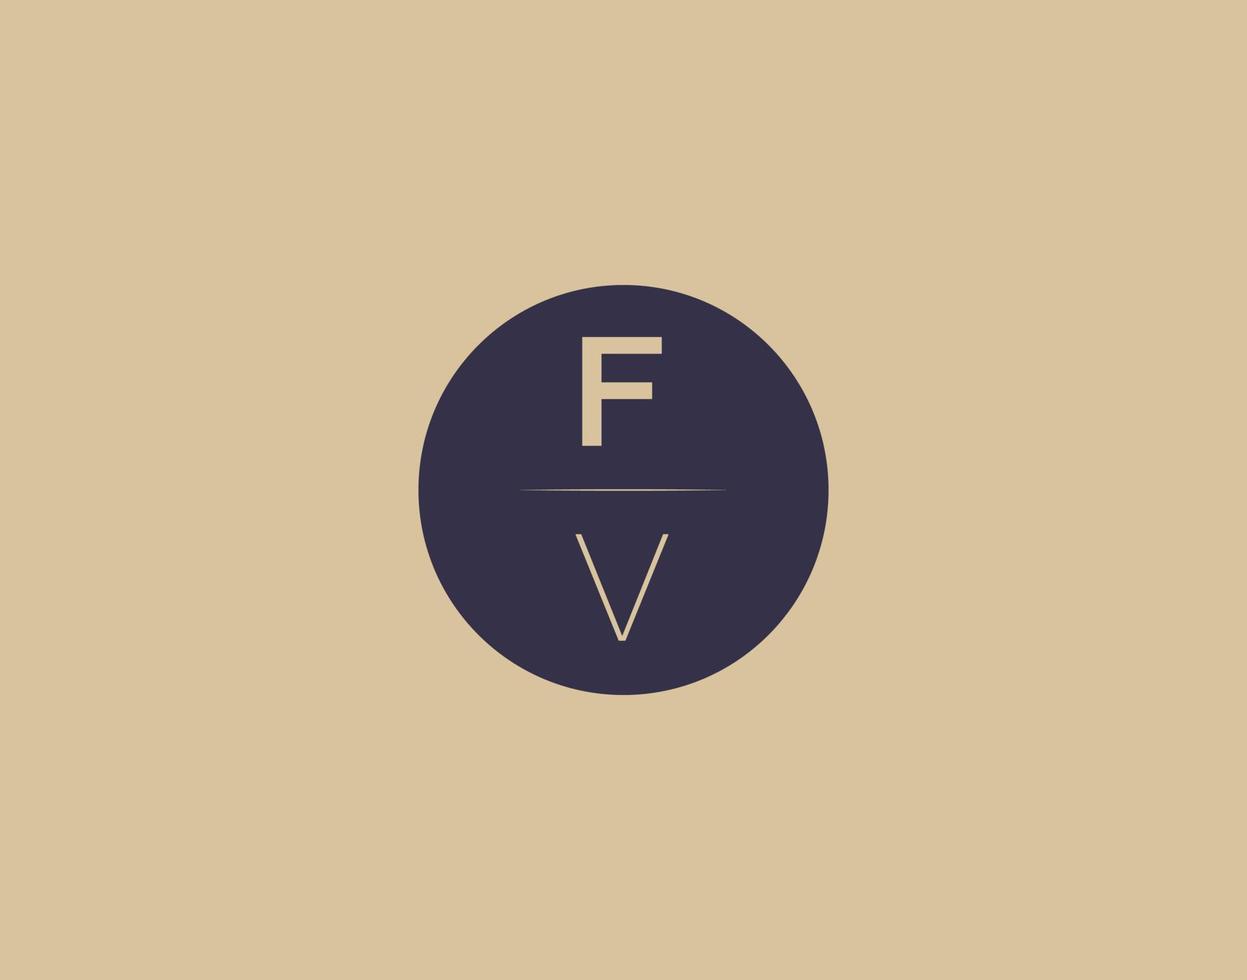 fv brief modern elegant logo ontwerp vector afbeeldingen